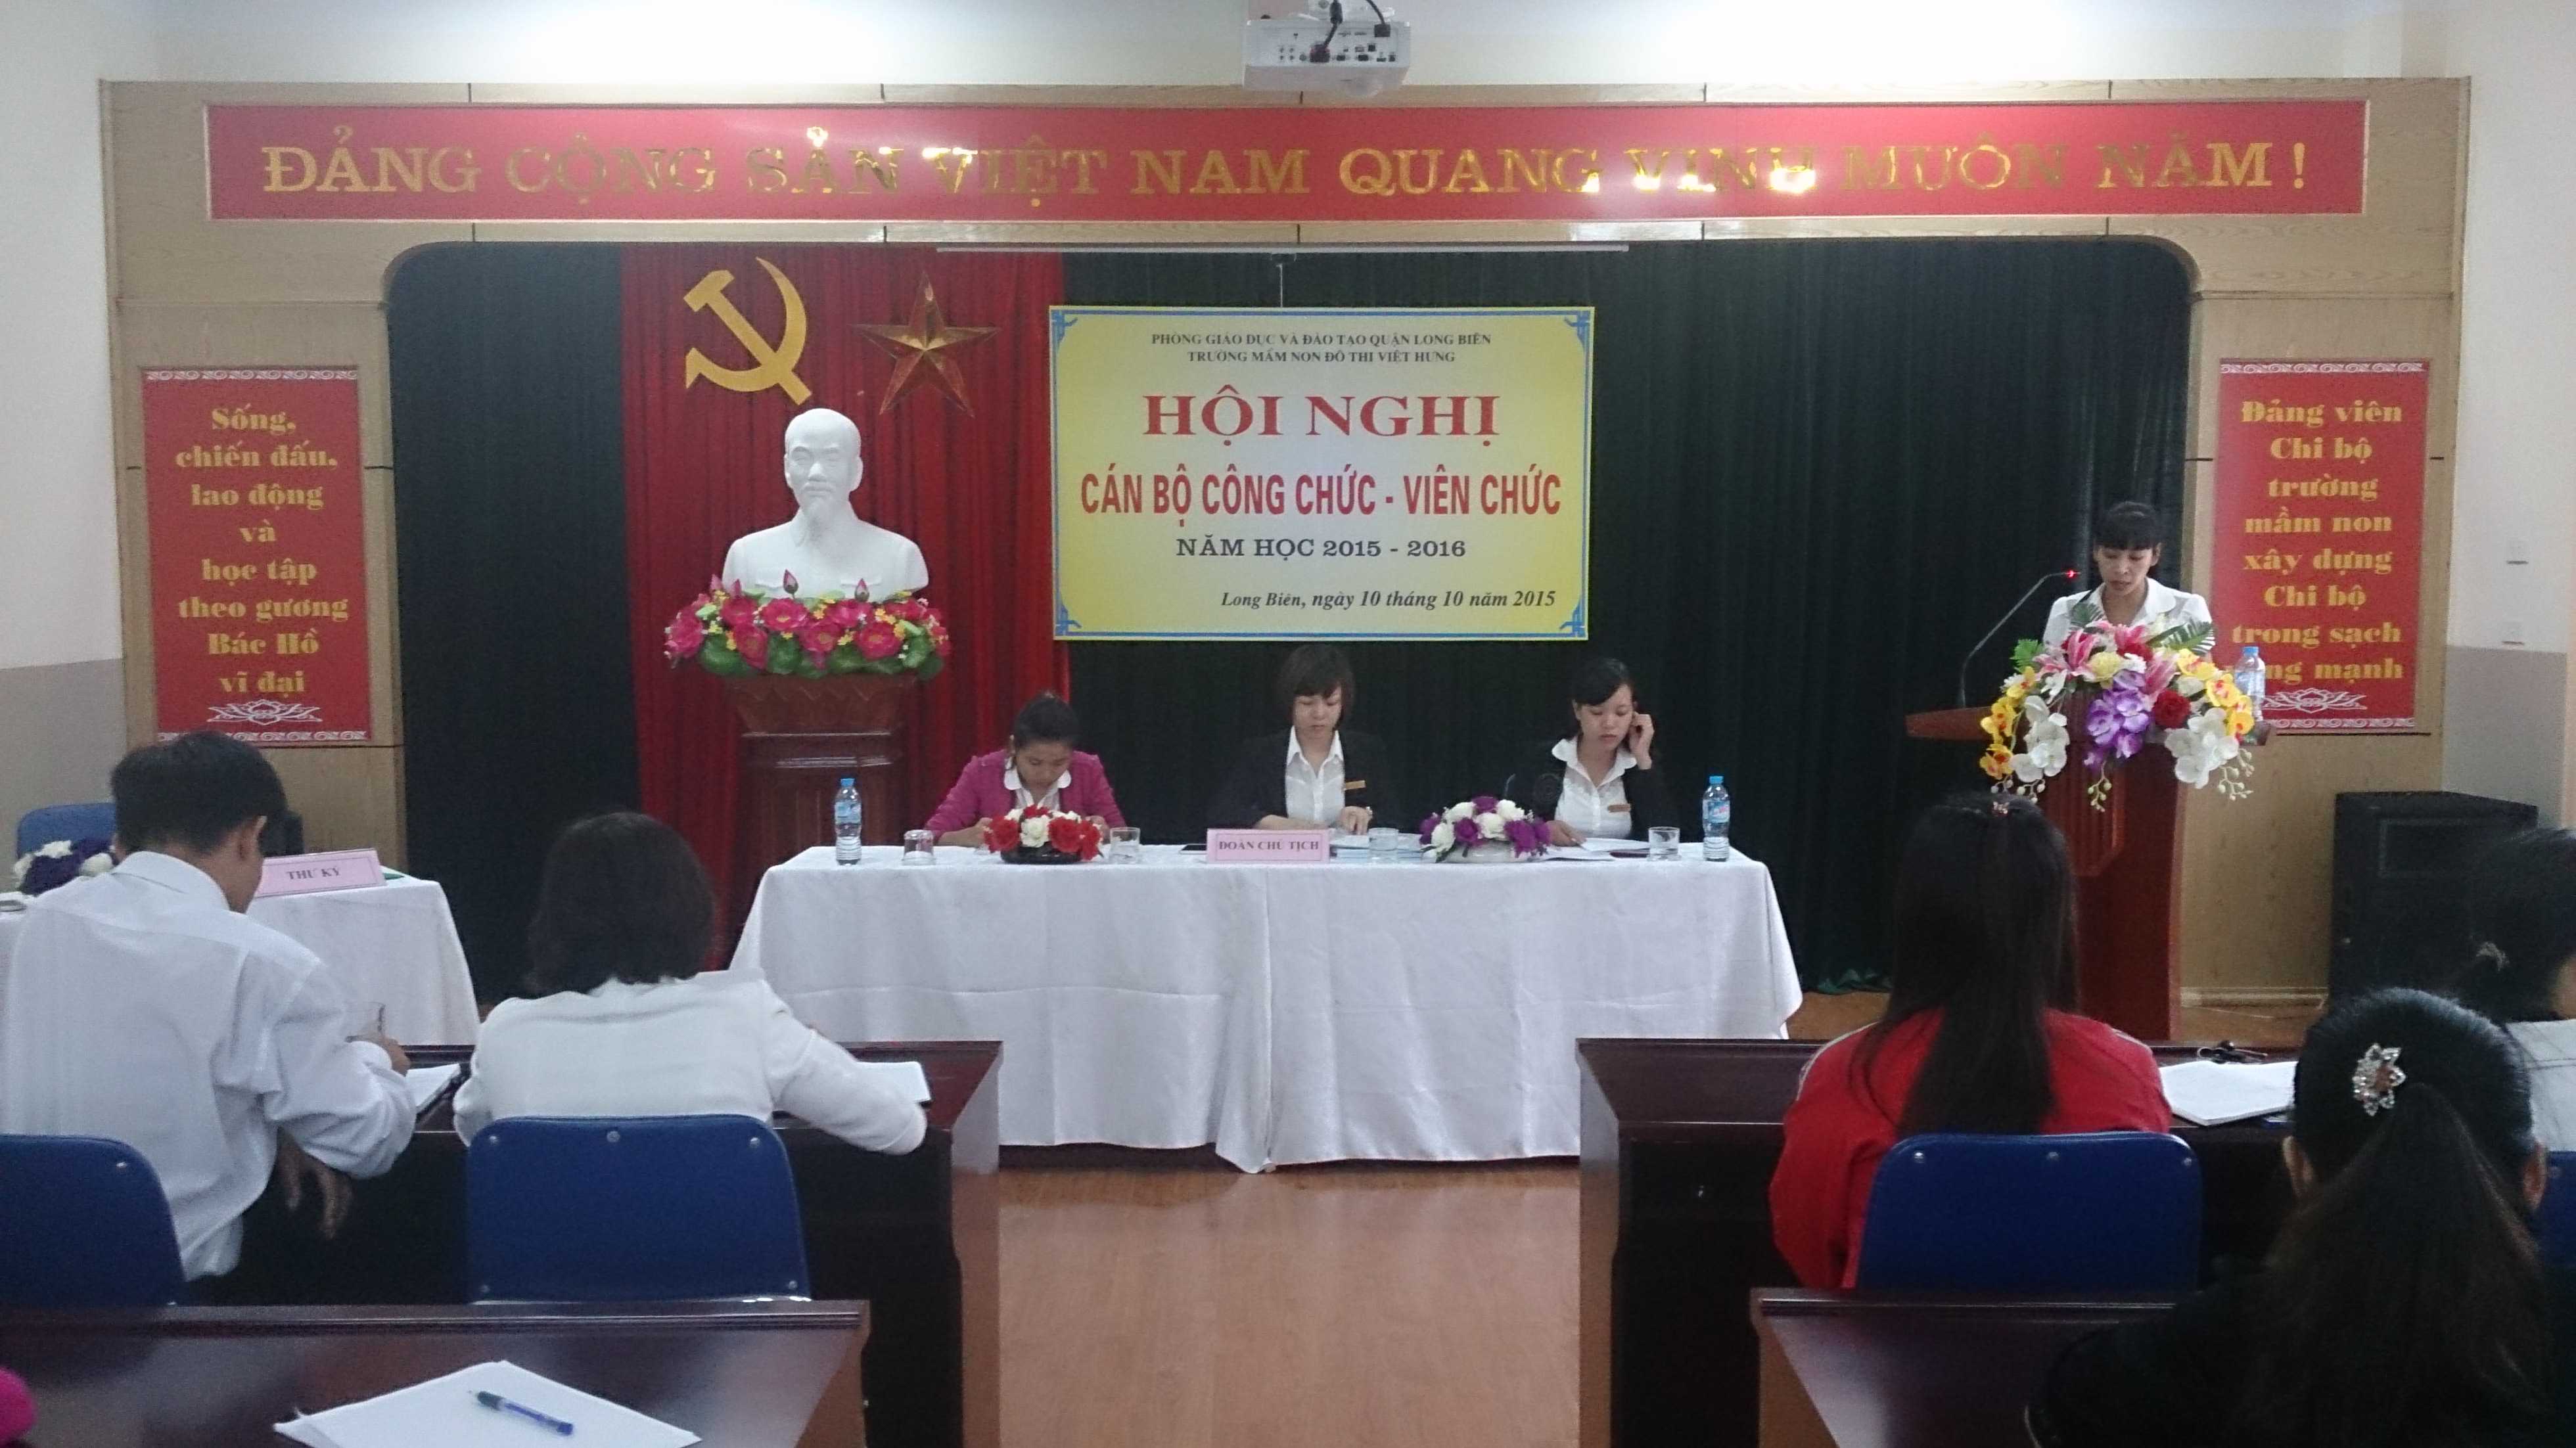 Đ/c Nguyễn Hà Lương - Thư ký hội nghị thông qua các nghị quyết.